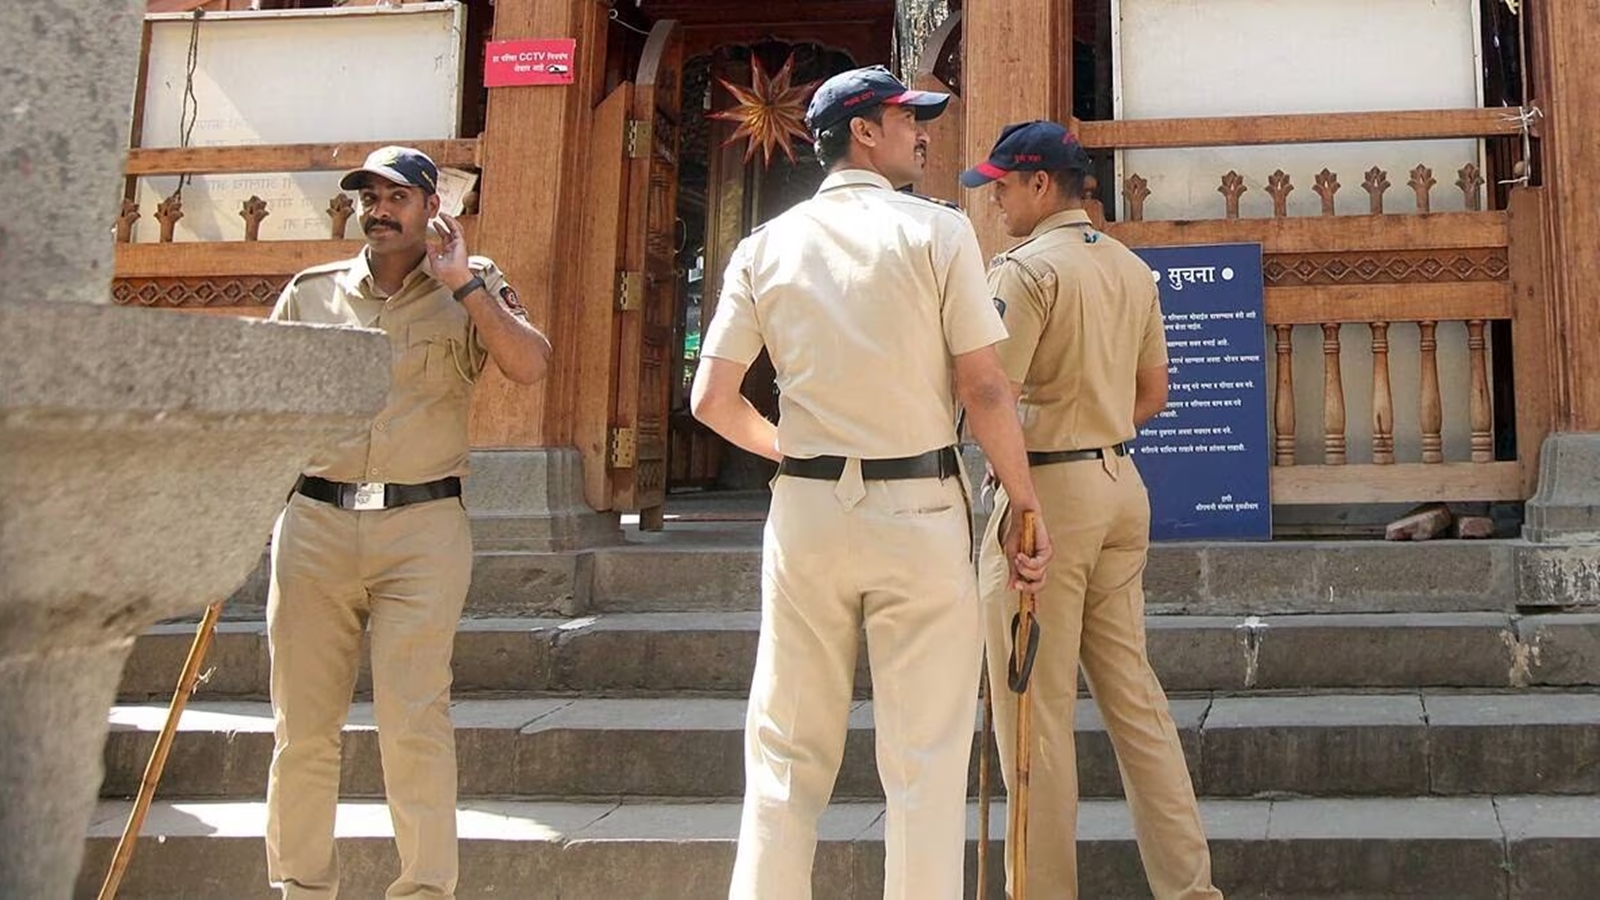 Mumbai: Kingpins of job scam arrested, 482 victims’ passports recovered | Mumbai News